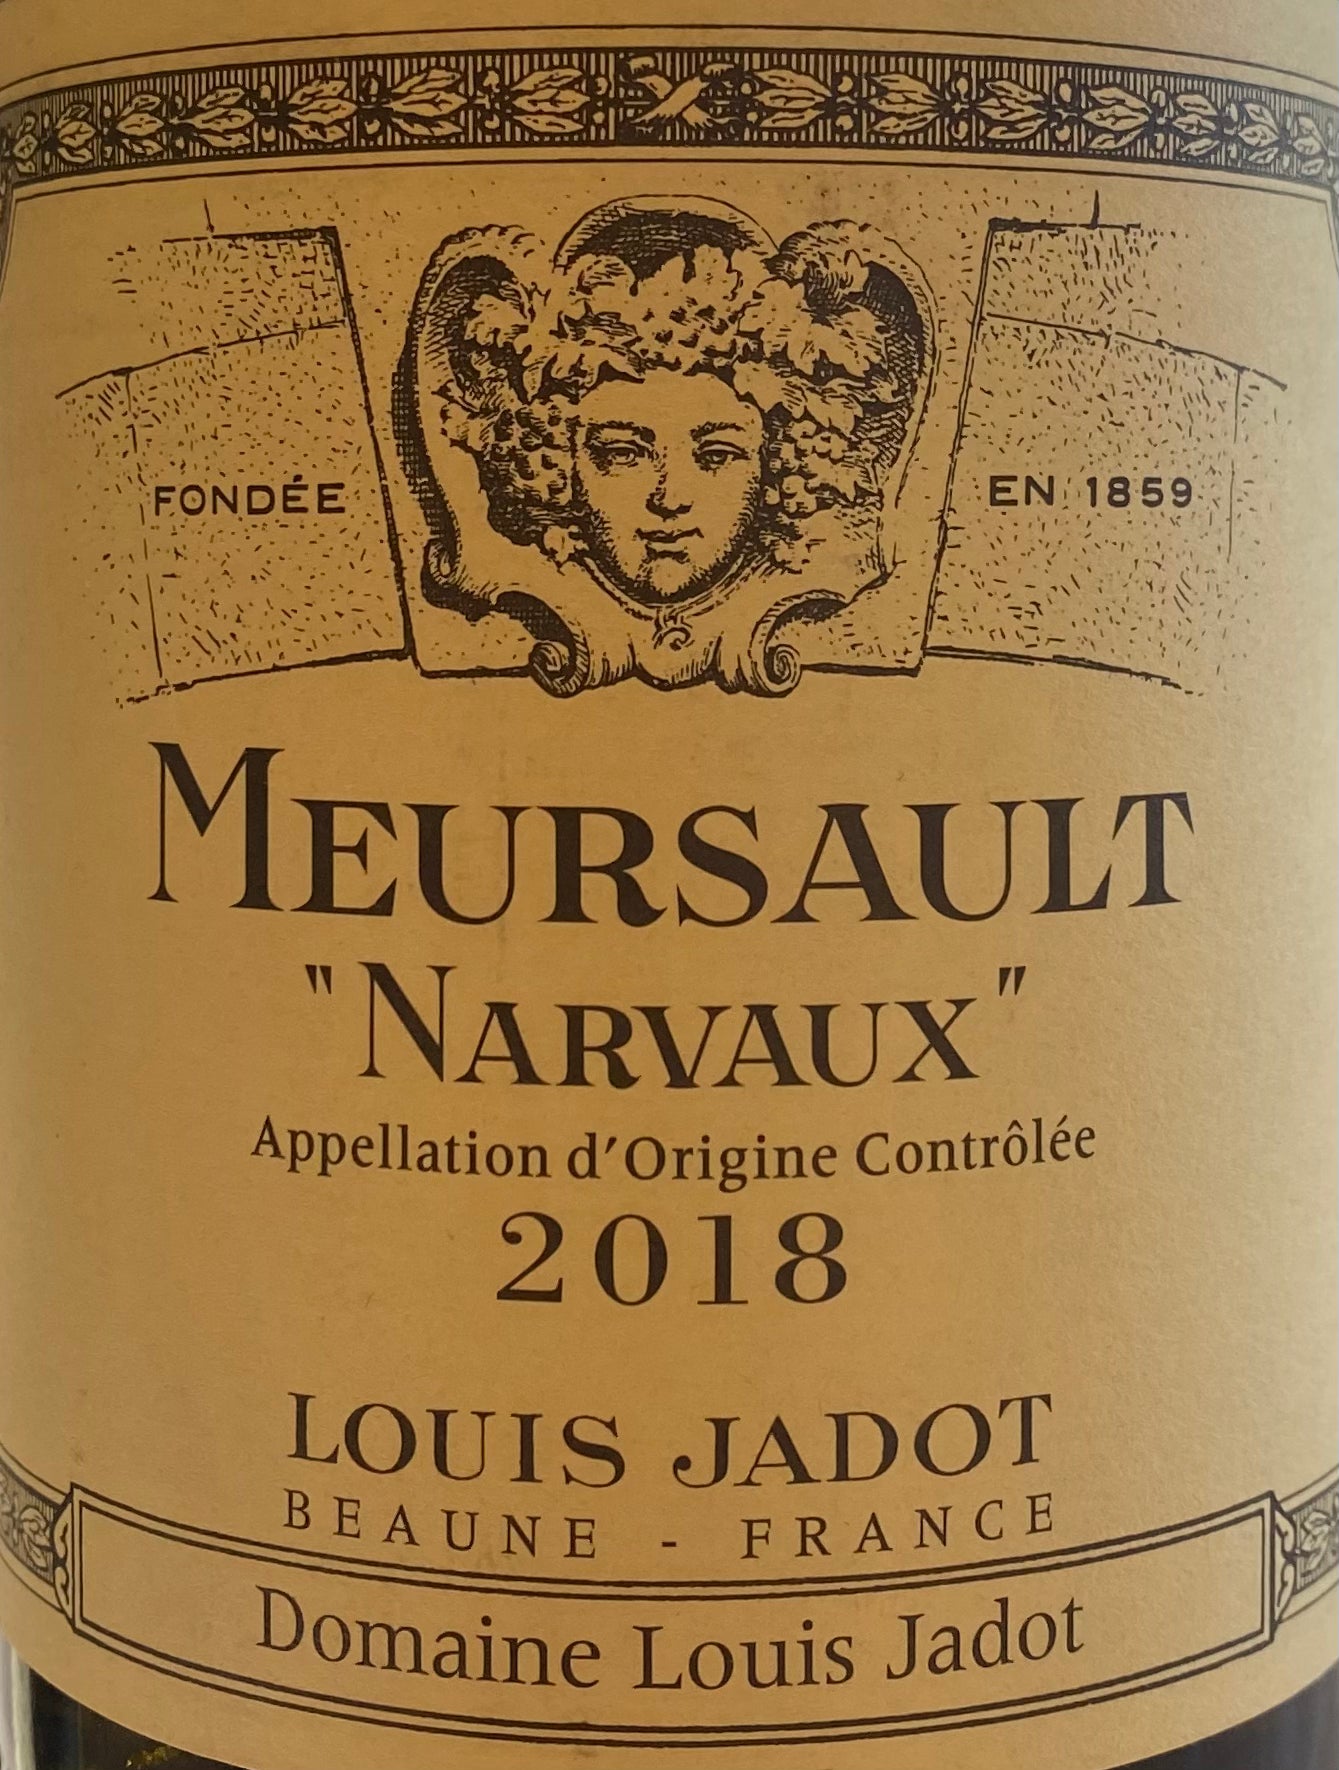 Louis Jadot 'Les Narvaux' Meaursault